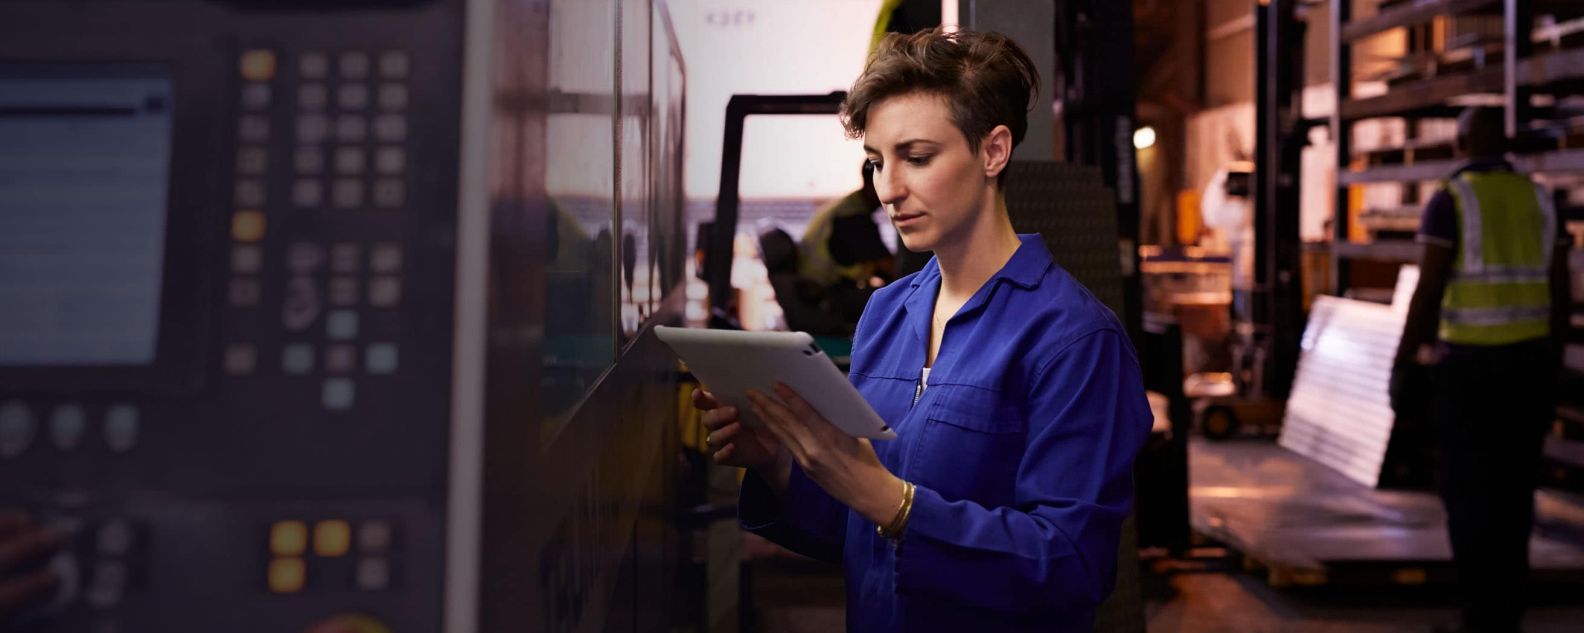 Mujer mirando una computadora portátil en una fábrica